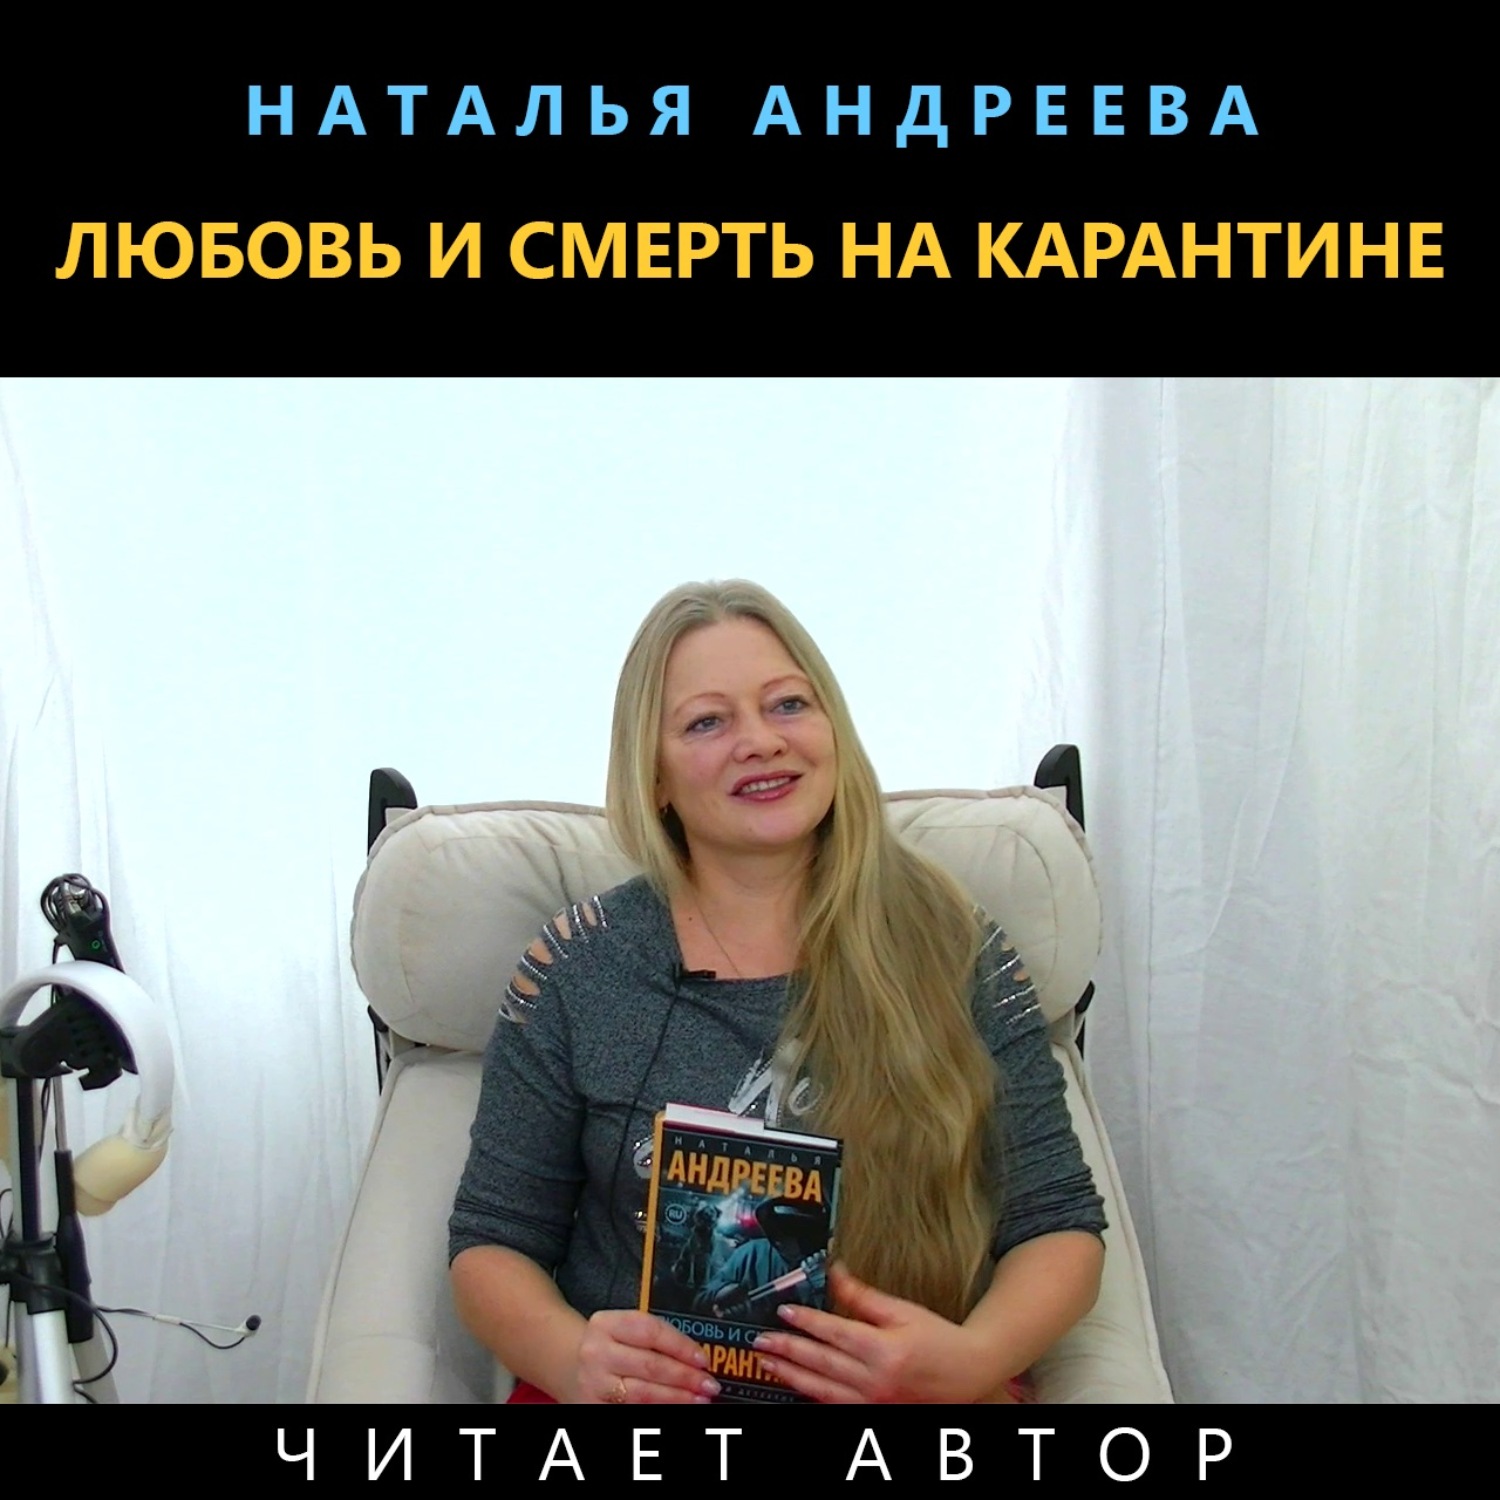 Наталья Андреева любовь и смерть на карантине обложка